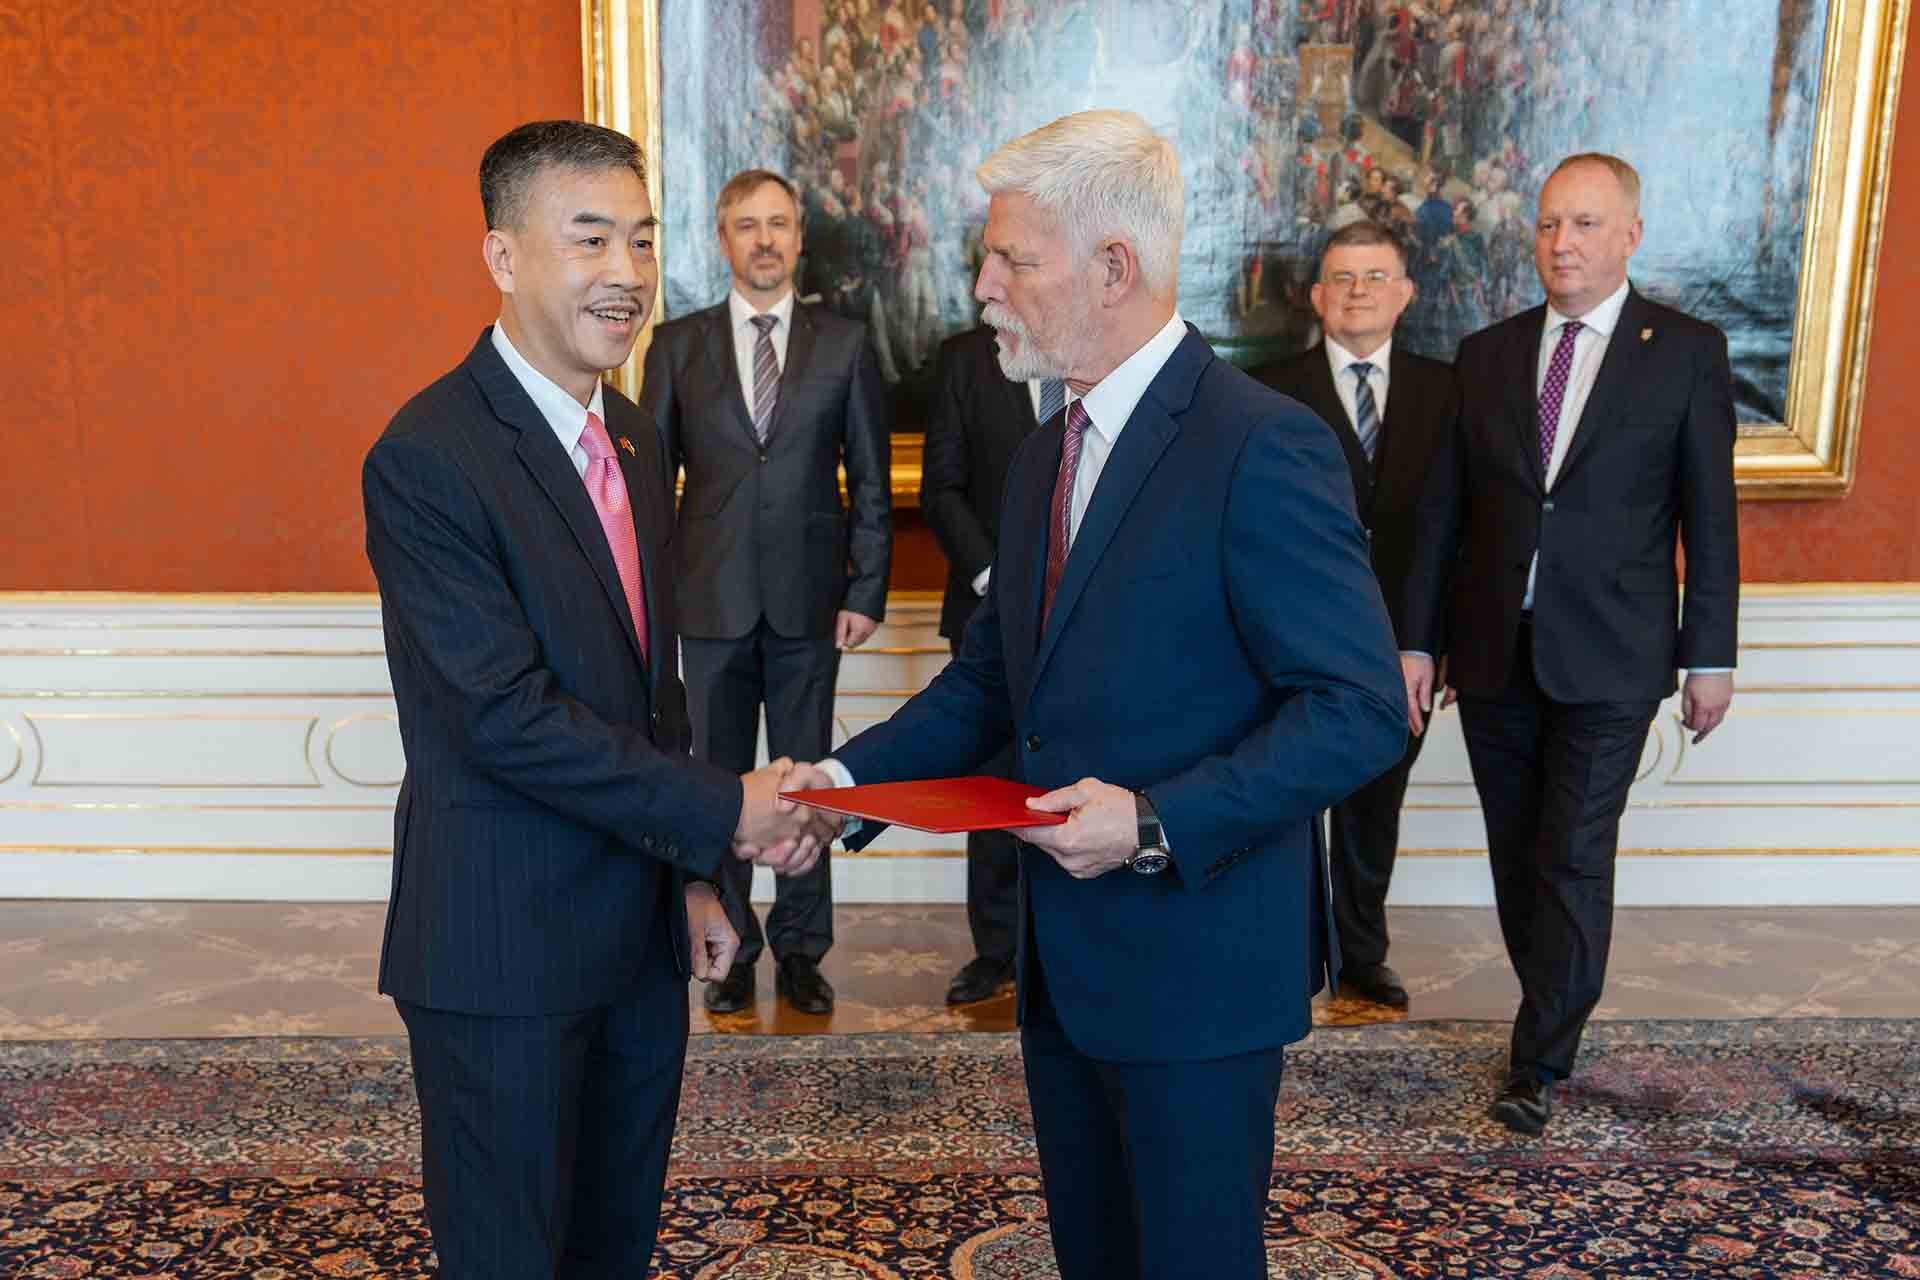 Đại sứ Dương Hoài Nam trình Thư ủy nhiệm lên Tổng thống Cộng hòa Czech Petr Pavel.  (Ảnh: Tomáš Fongus)